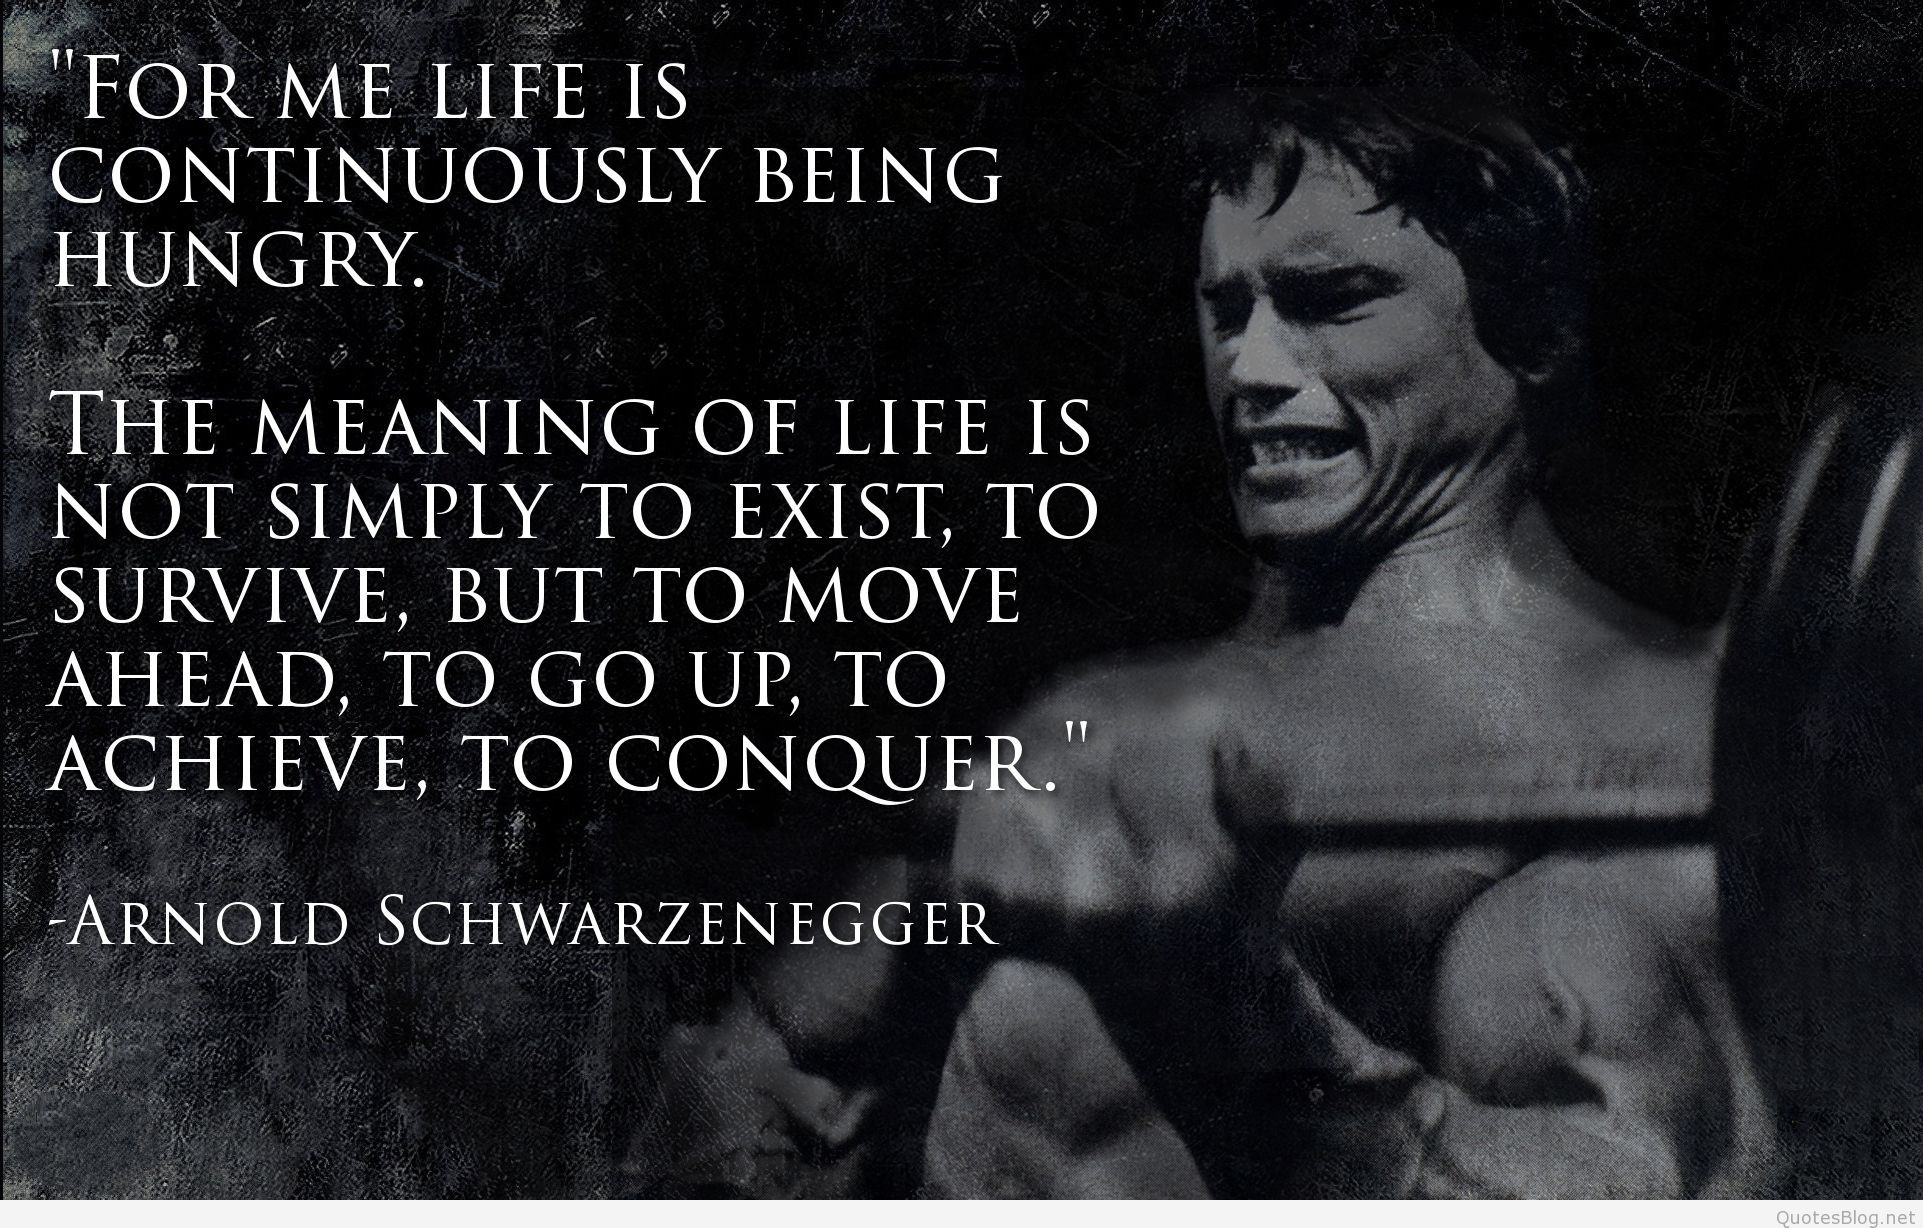 Best Arnold Schwarzenegger quotes wallpaper & image